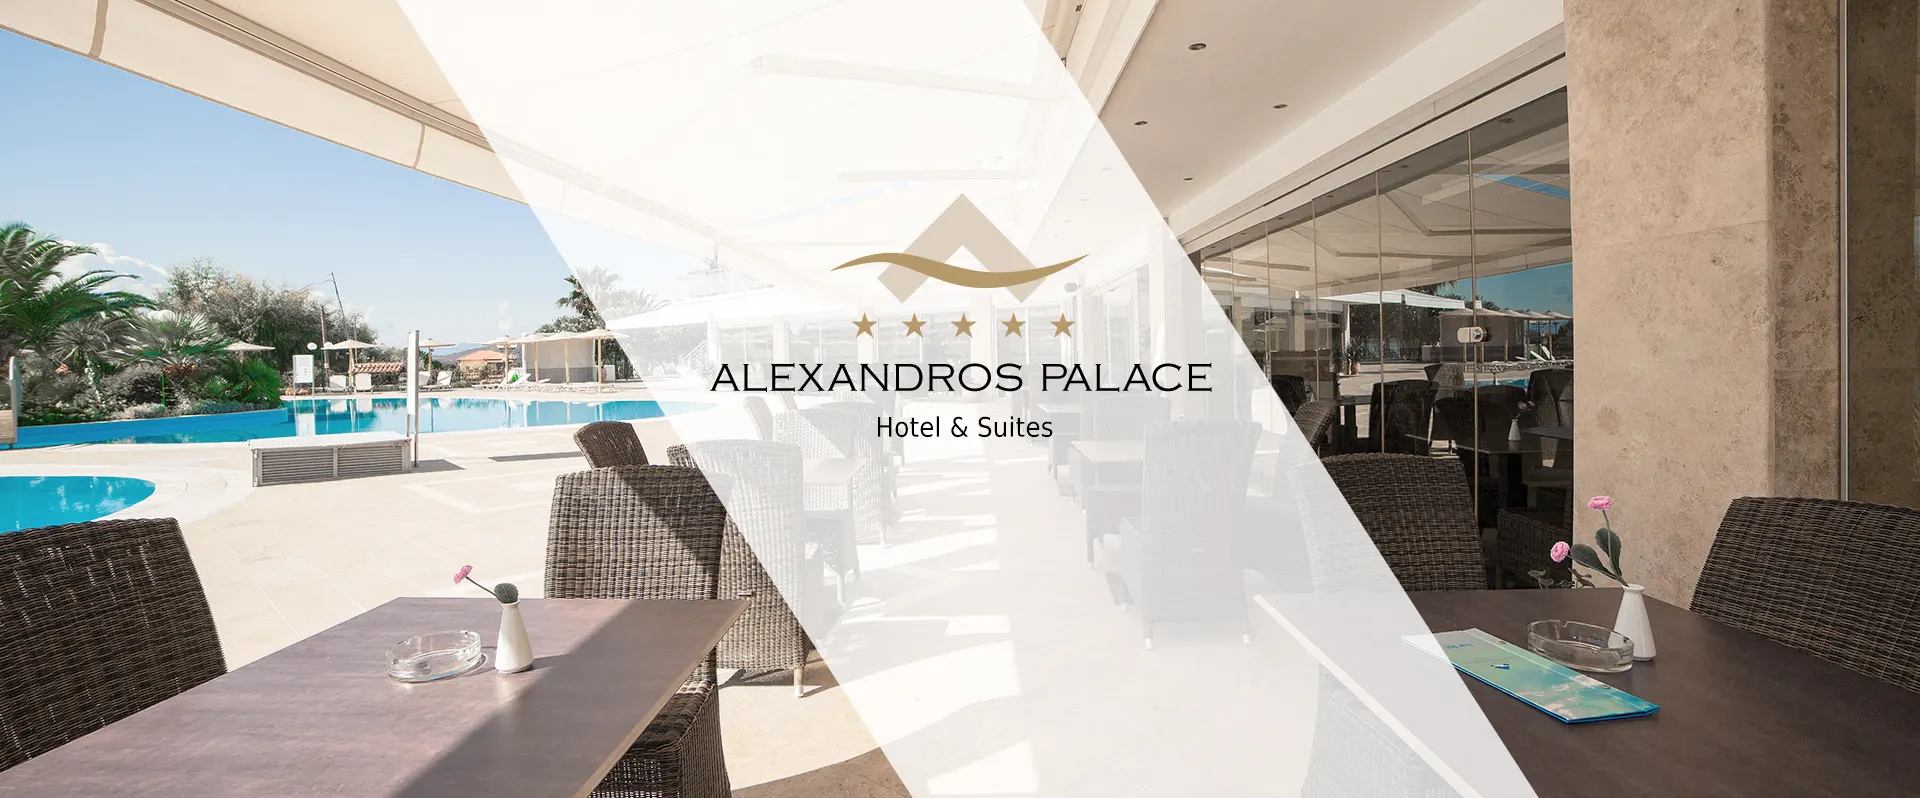 alexandros palace